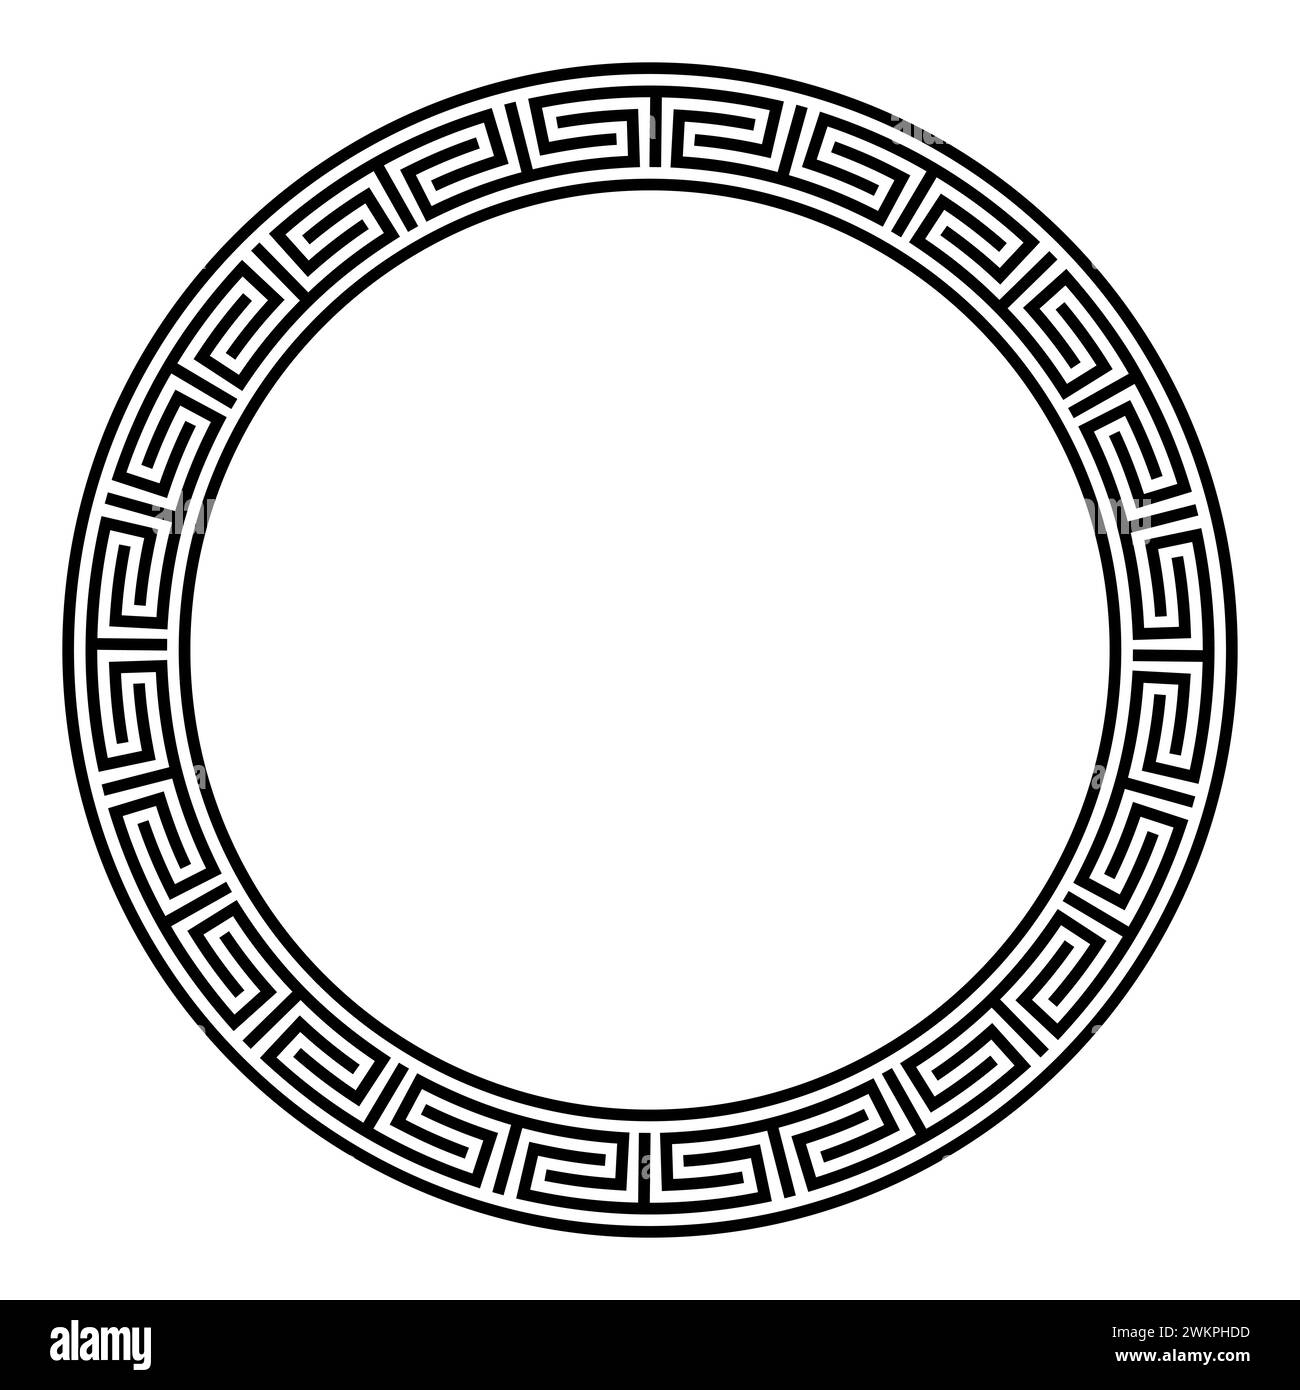 Motif de méandre chinois, cadre de cercle. Bordure ronde décorative avec des méandres déconnectés et changeant de direction, un motif répété. Banque D'Images